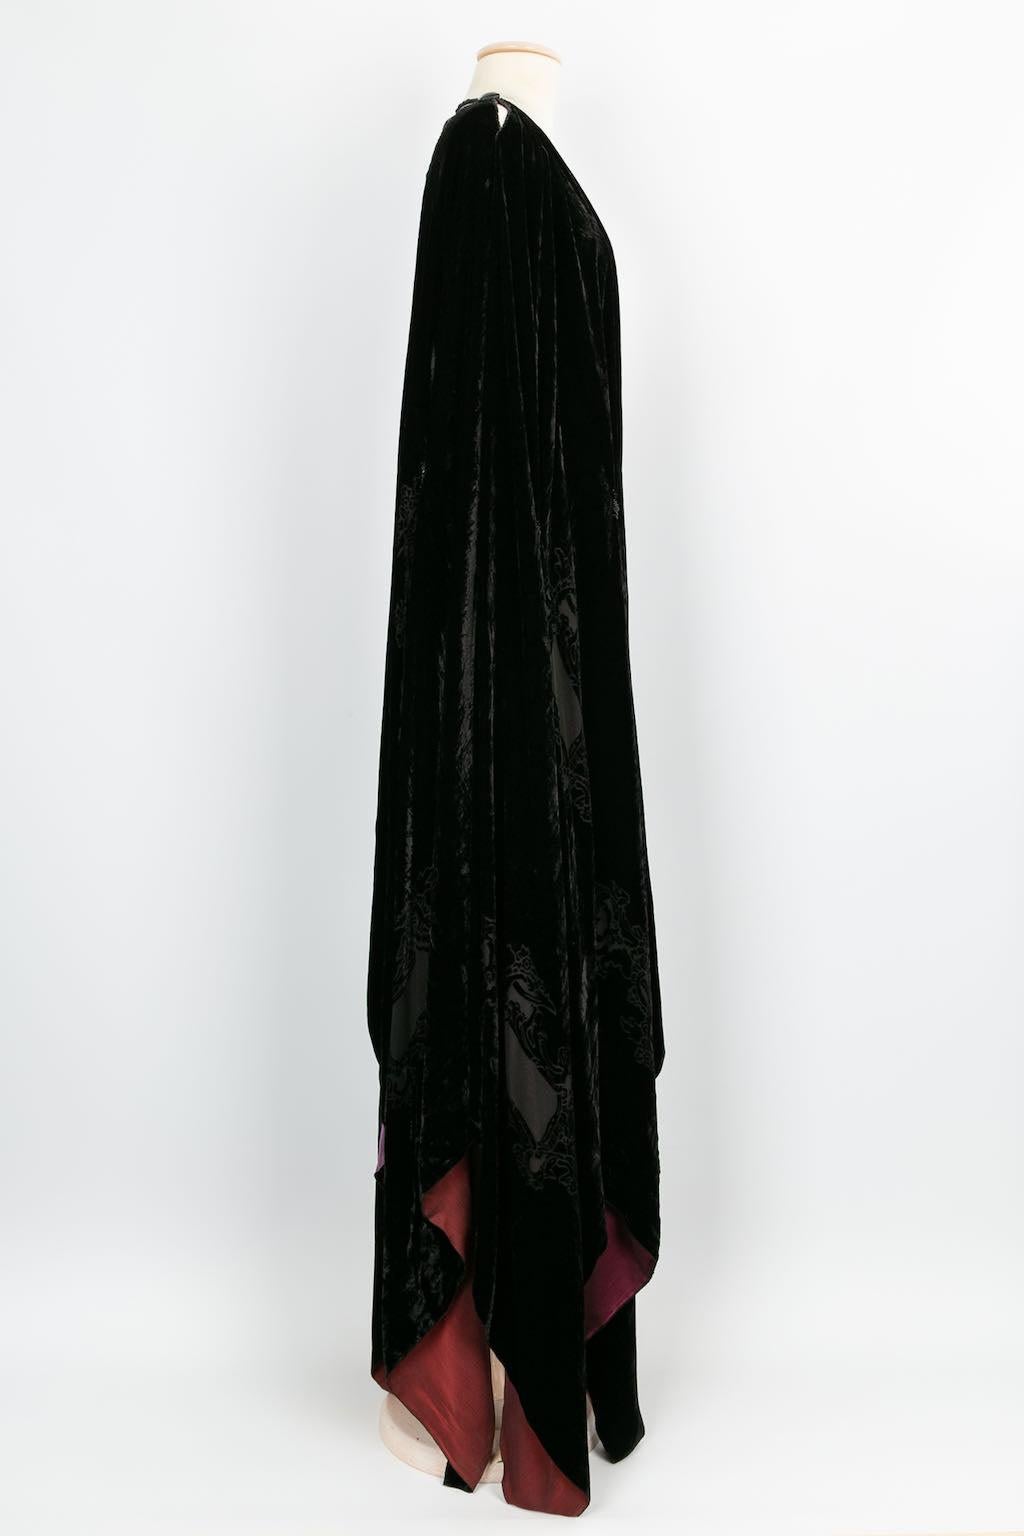 Women's Franck Sorbier Haute Couture Cape in Velvet, 2014/15 For Sale